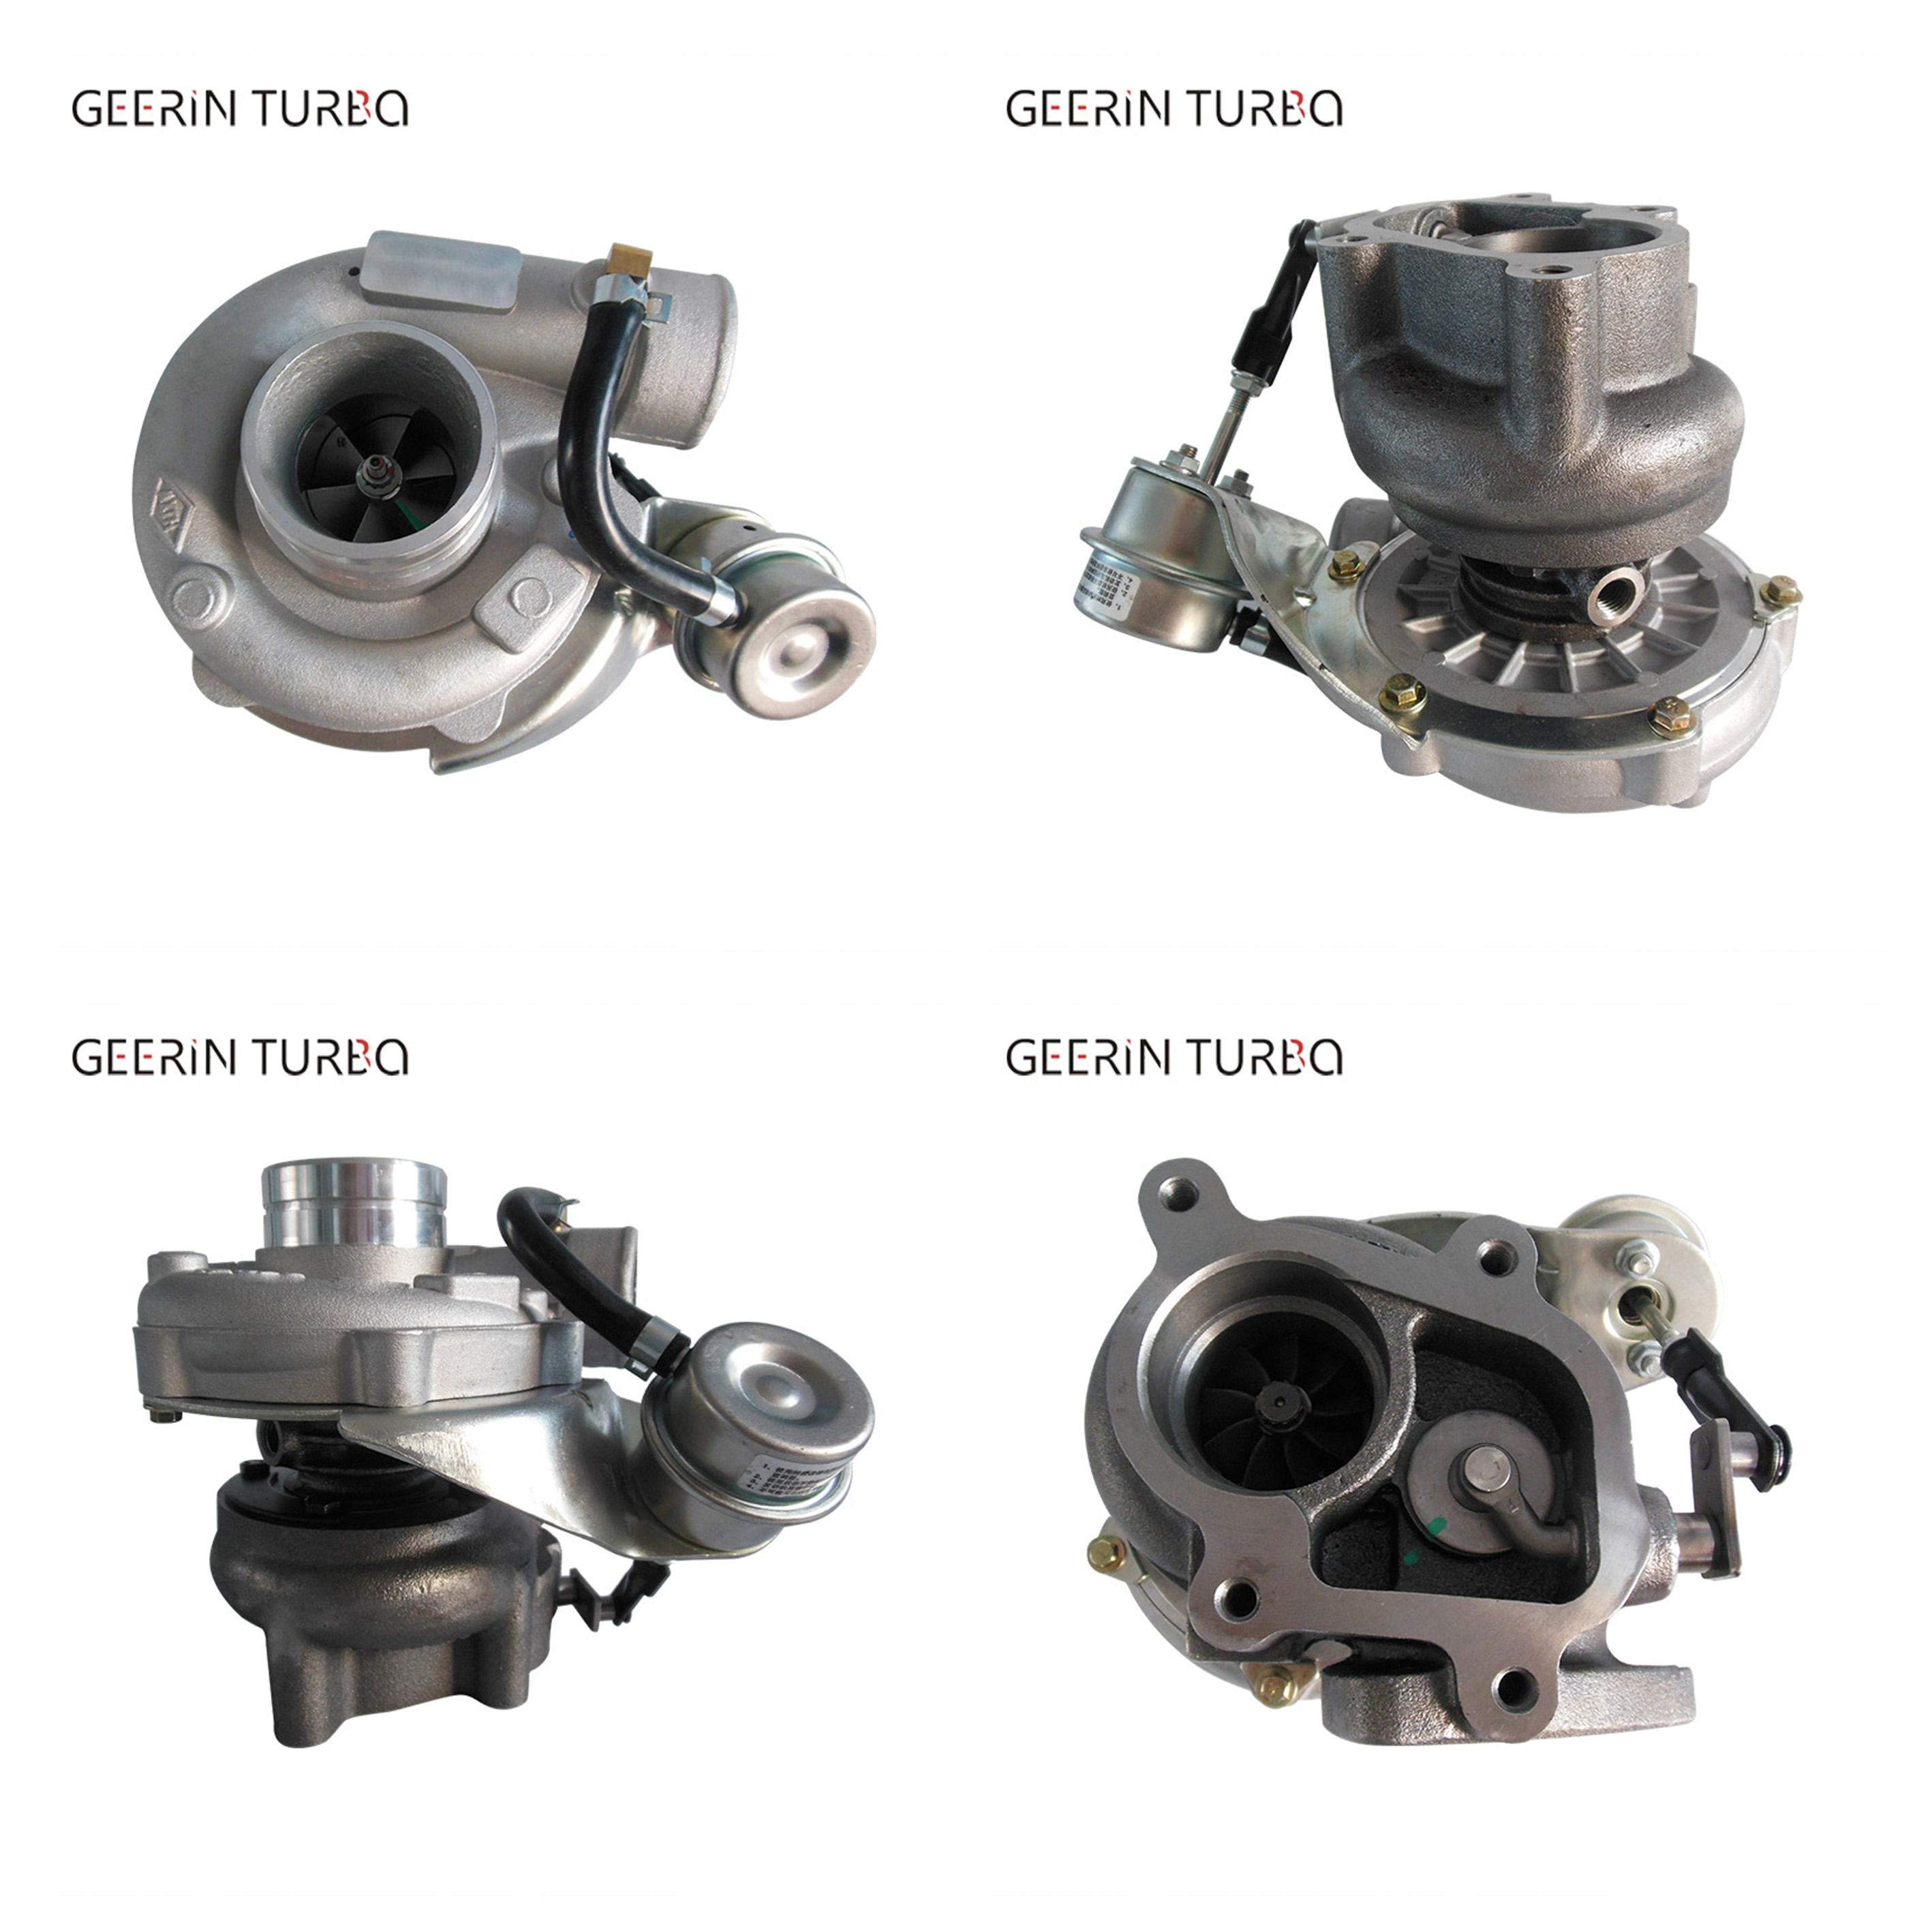 Comprar GT22 de alta calidad 736210-5009 736210-5003 736210-0009 Conjunto de turbocompresor completo para JMC, GT22 de alta calidad 736210-5009 736210-5003 736210-0009 Conjunto de turbocompresor completo para JMC Precios, GT22 de alta calidad 736210-5009 736210-5003 736210-0009 Conjunto de turbocompresor completo para JMC Marcas, GT22 de alta calidad 736210-5009 736210-5003 736210-0009 Conjunto de turbocompresor completo para JMC Fabricante, GT22 de alta calidad 736210-5009 736210-5003 736210-0009 Conjunto de turbocompresor completo para JMC Citas, GT22 de alta calidad 736210-5009 736210-5003 736210-0009 Conjunto de turbocompresor completo para JMC Empresa.